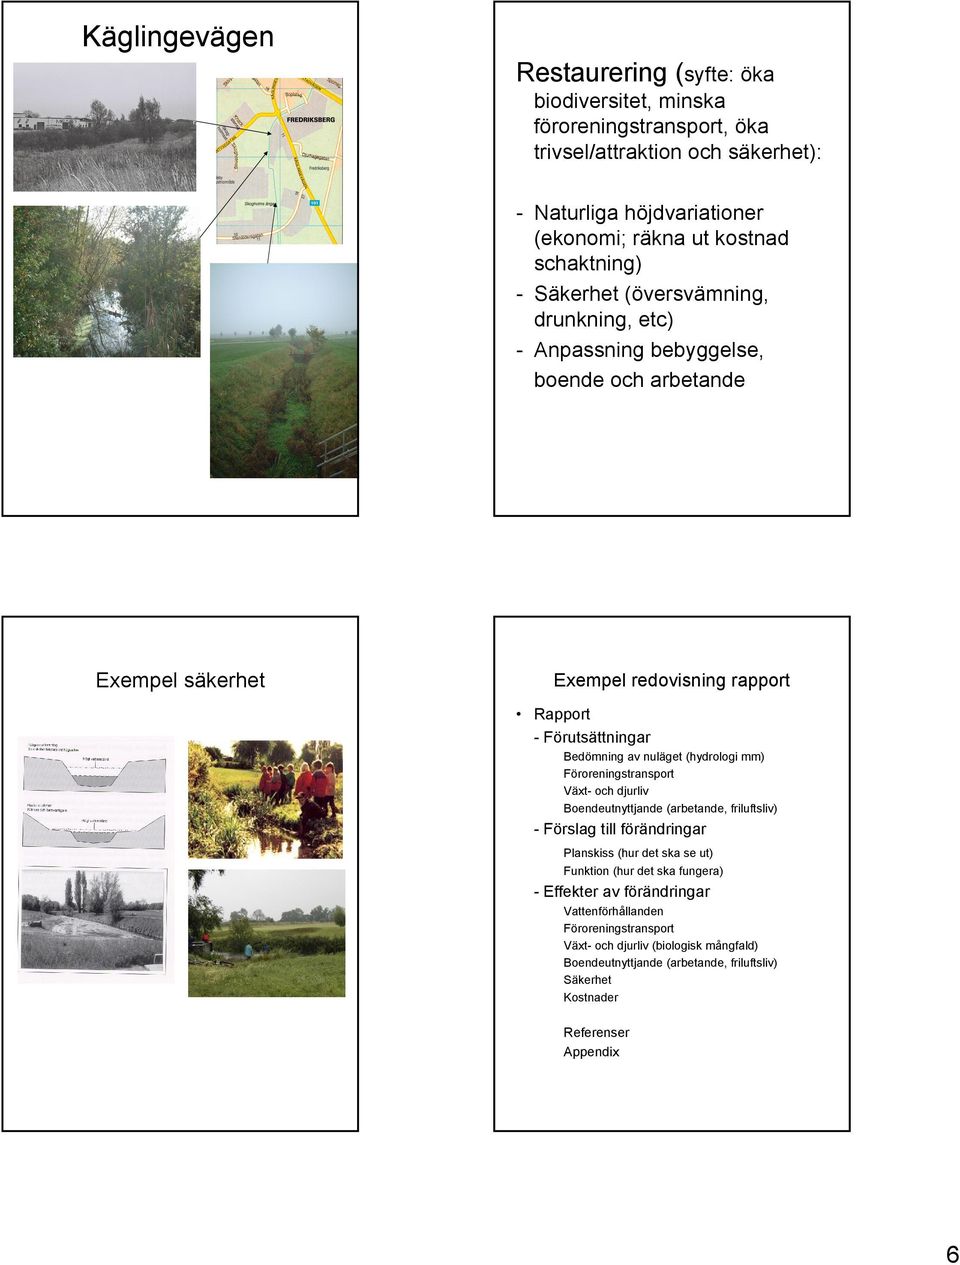 nuläget (hydrologi mm) Föroreningstransport Växt- och djurliv Boendeutnyttjande (arbetande, friluftsliv) - Förslag till förändringar Planskiss (hur det ska se ut) Funktion (hur det ska